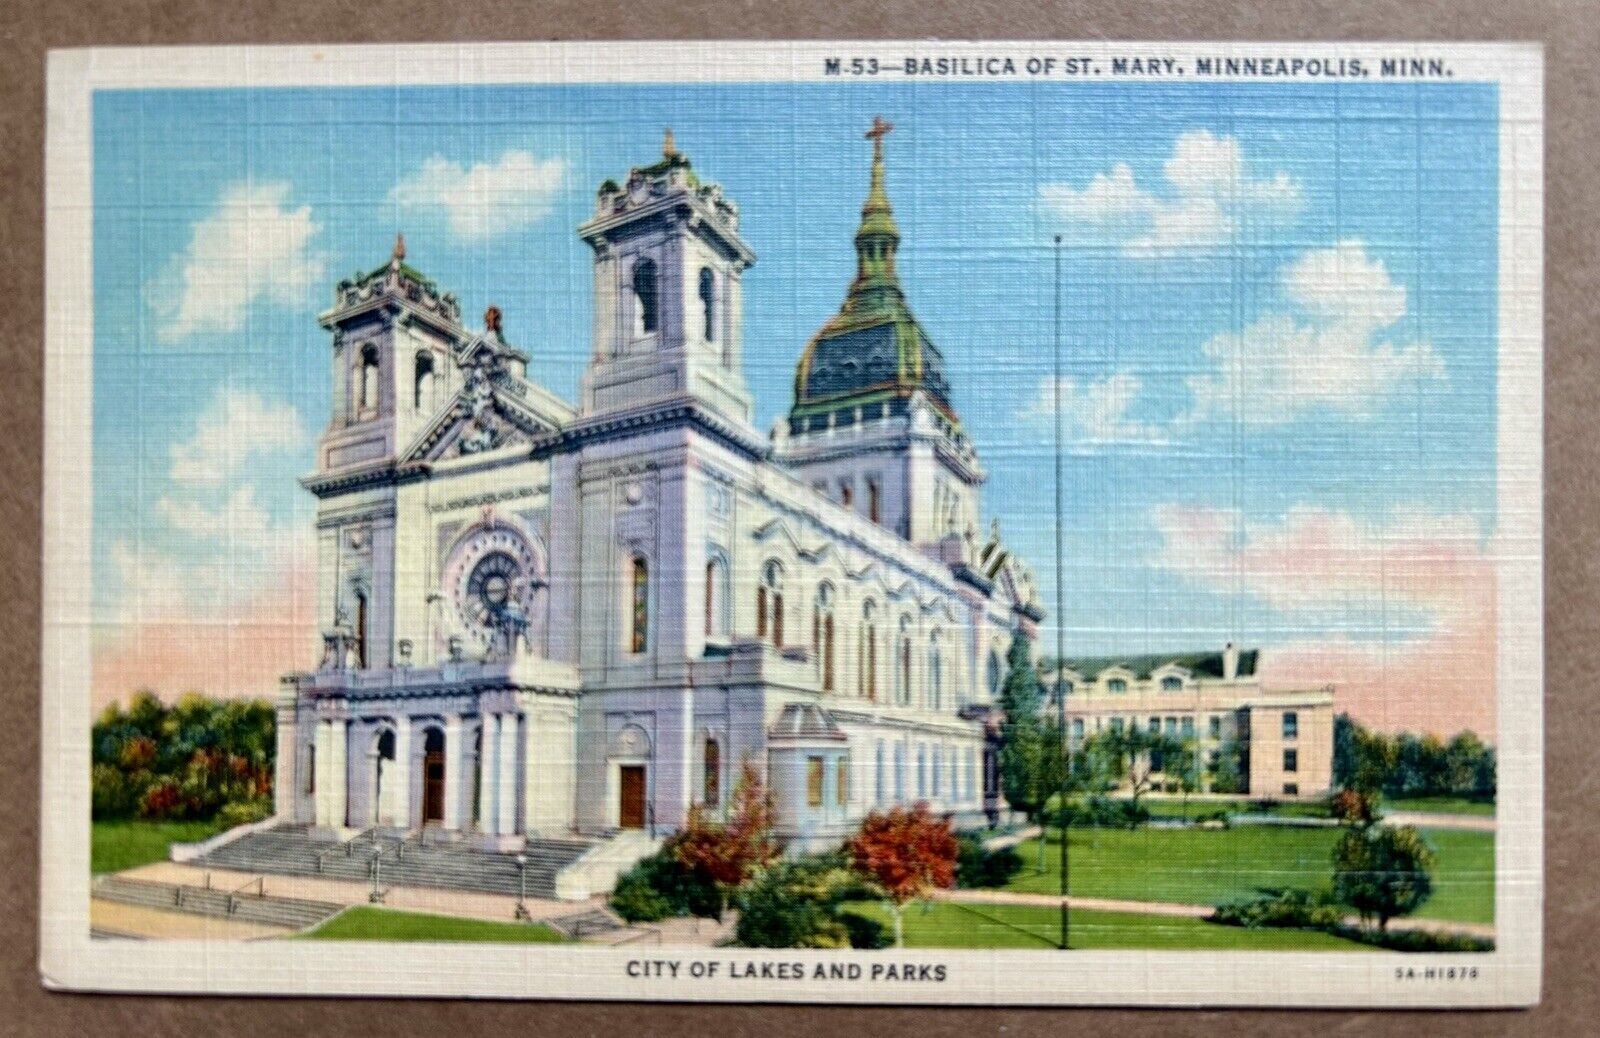 Basilica, St. Mary Minneapolis, Minnesota Vintage Postcard